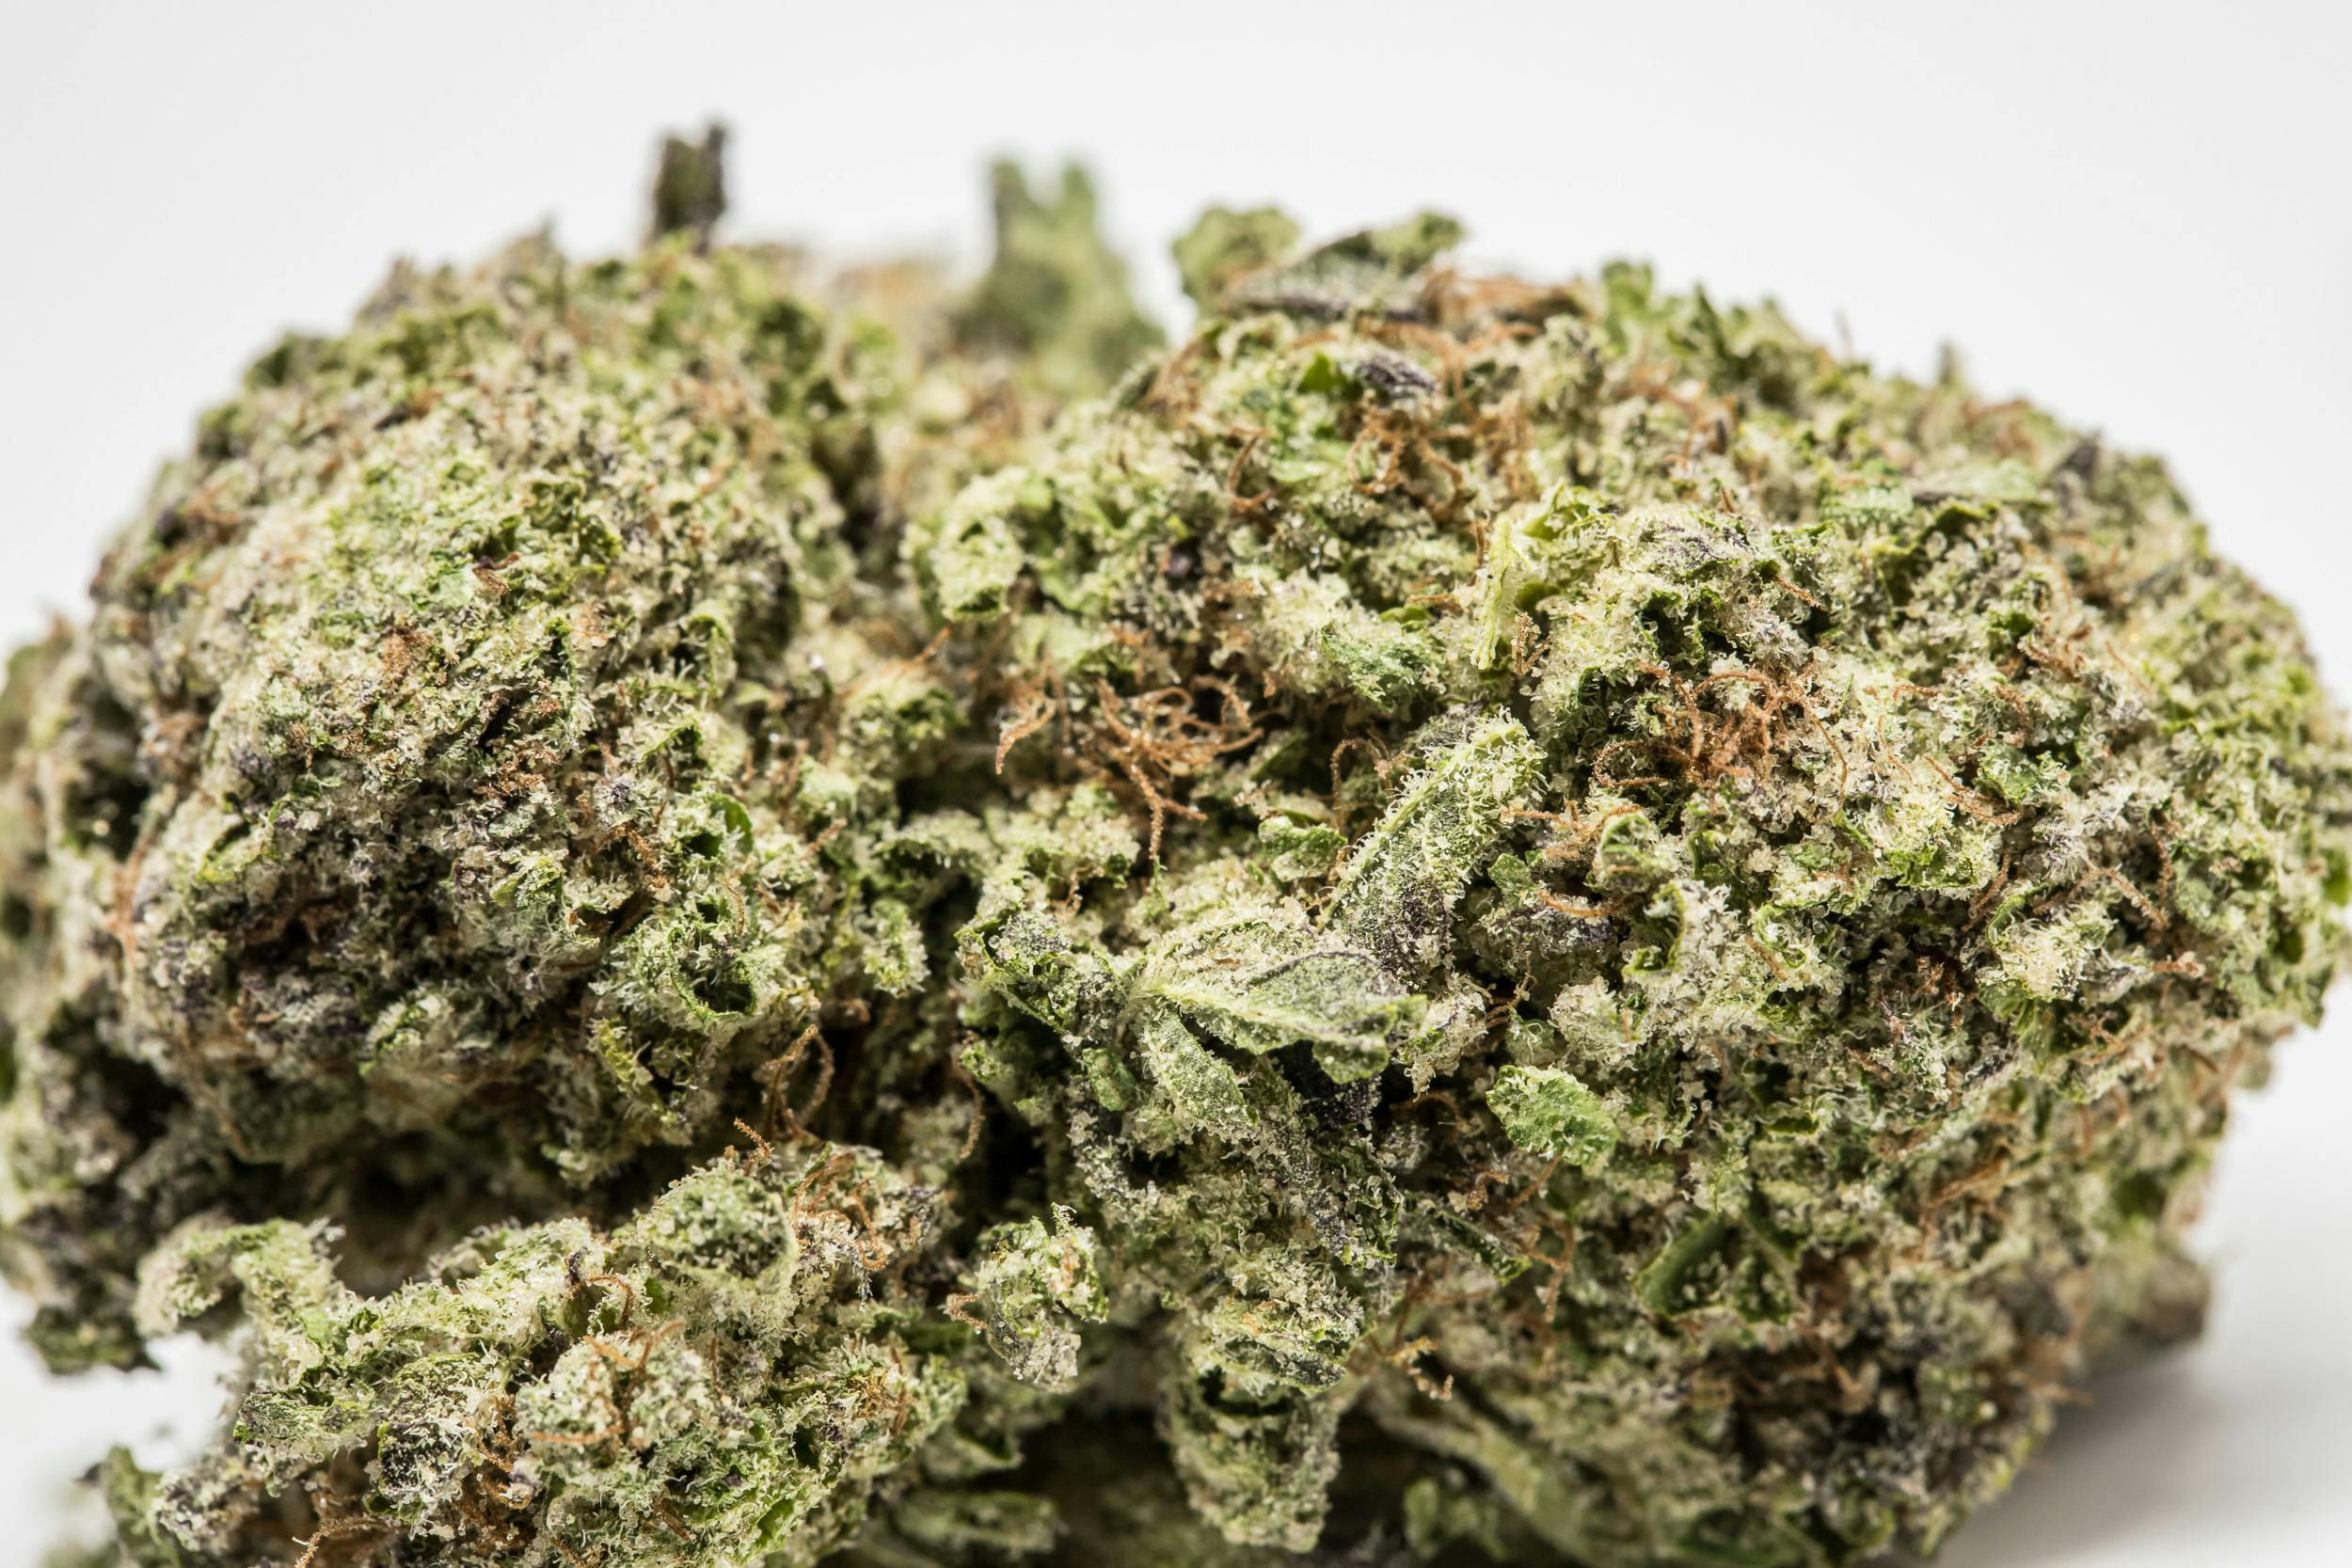 Orange Cookies Strain of Marijuana | Weed | Cannabis | Herb | Herb